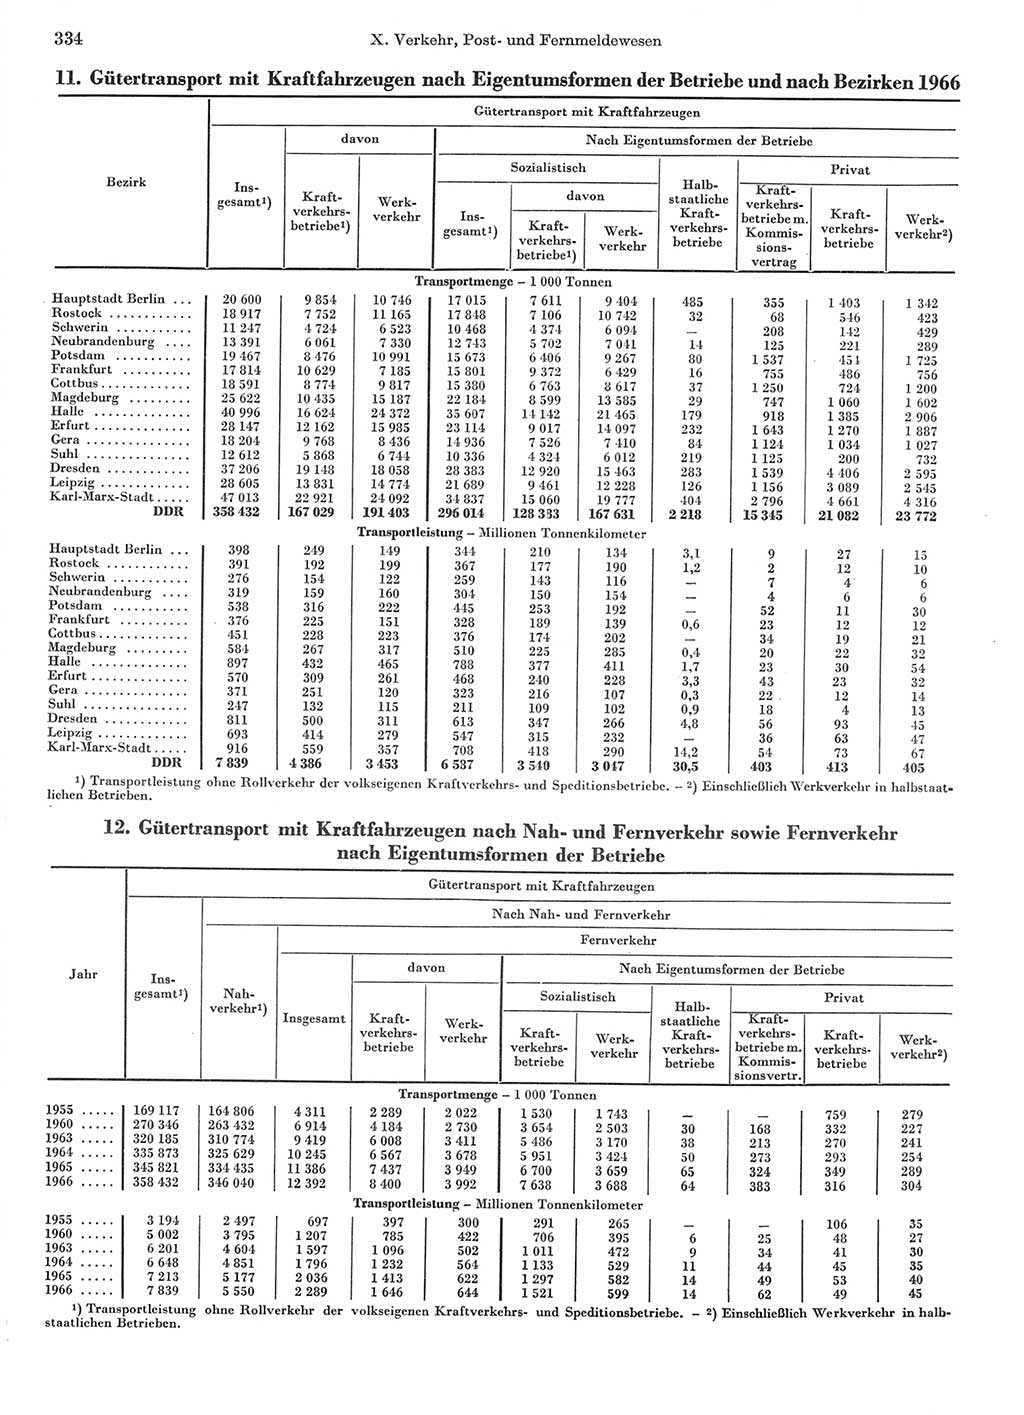 Statistisches Jahrbuch der Deutschen Demokratischen Republik (DDR) 1967, Seite 334 (Stat. Jb. DDR 1967, S. 334)